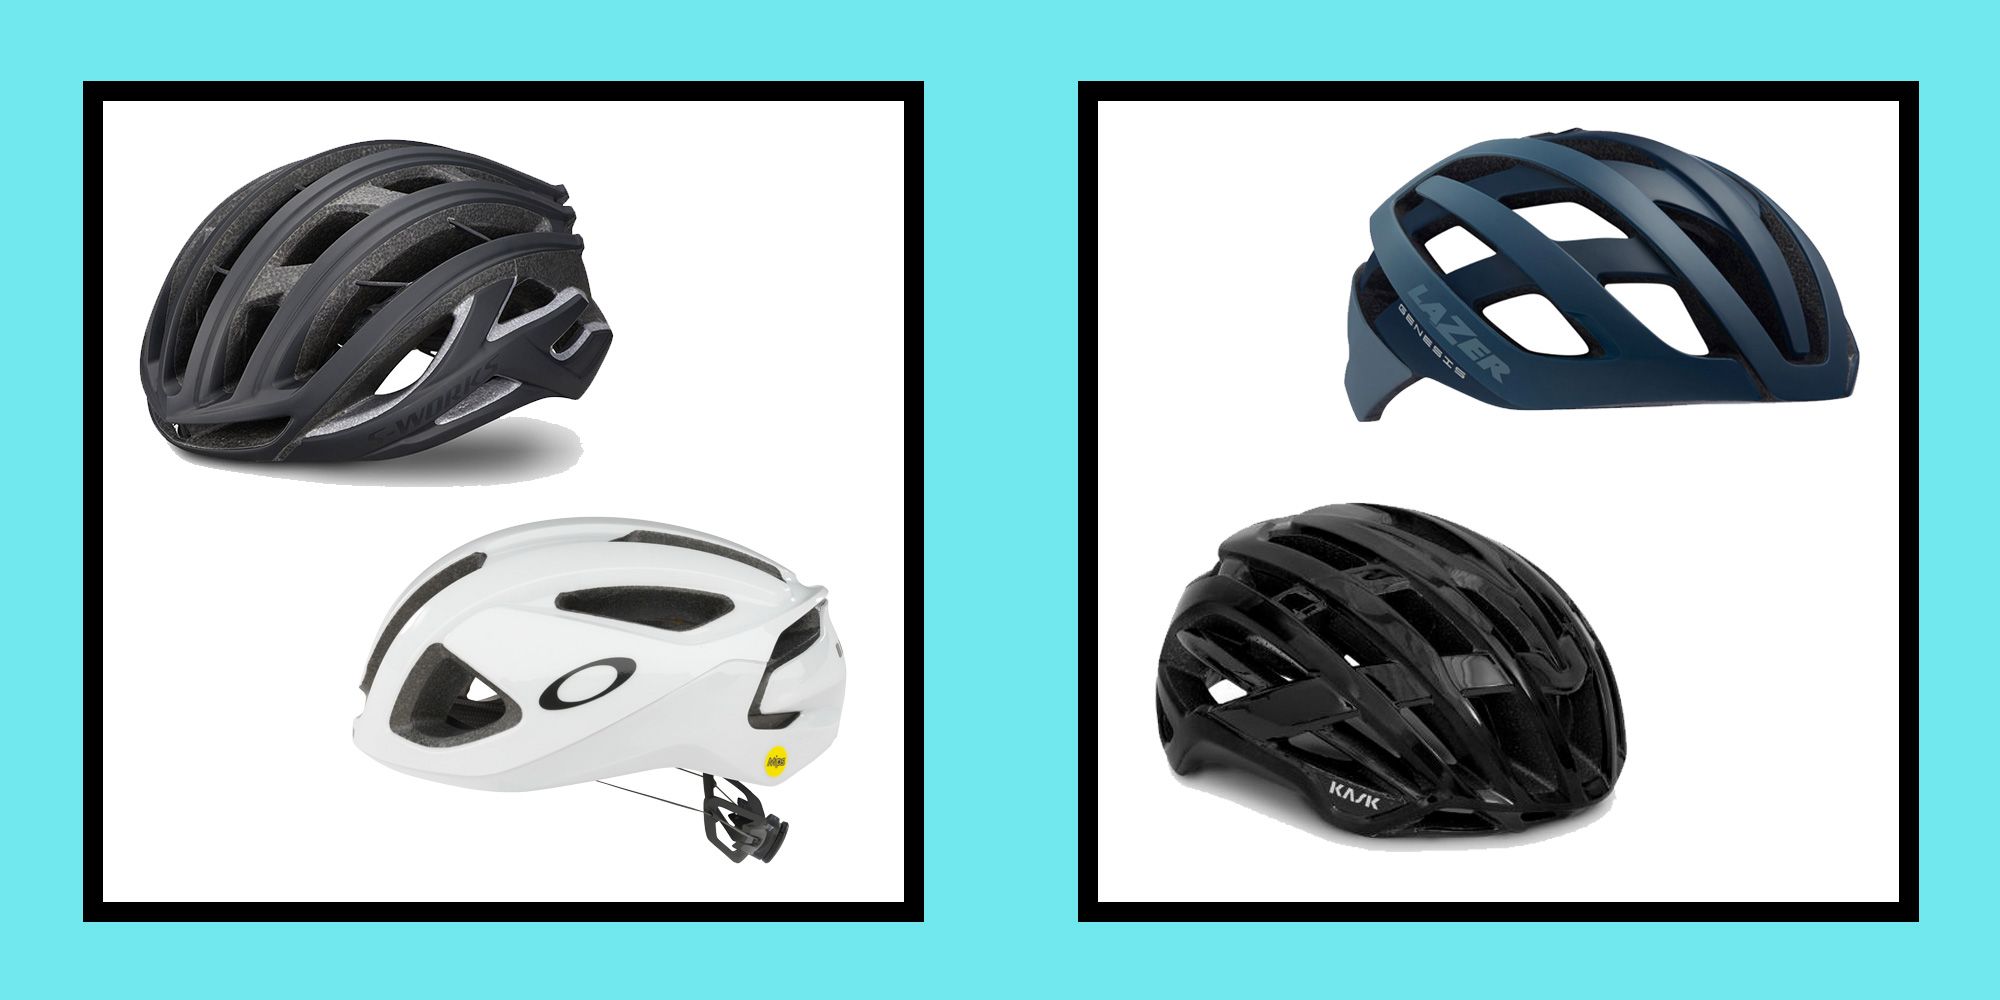 The bike helmets: Kask, Specialized, Lazer & Oakley tested